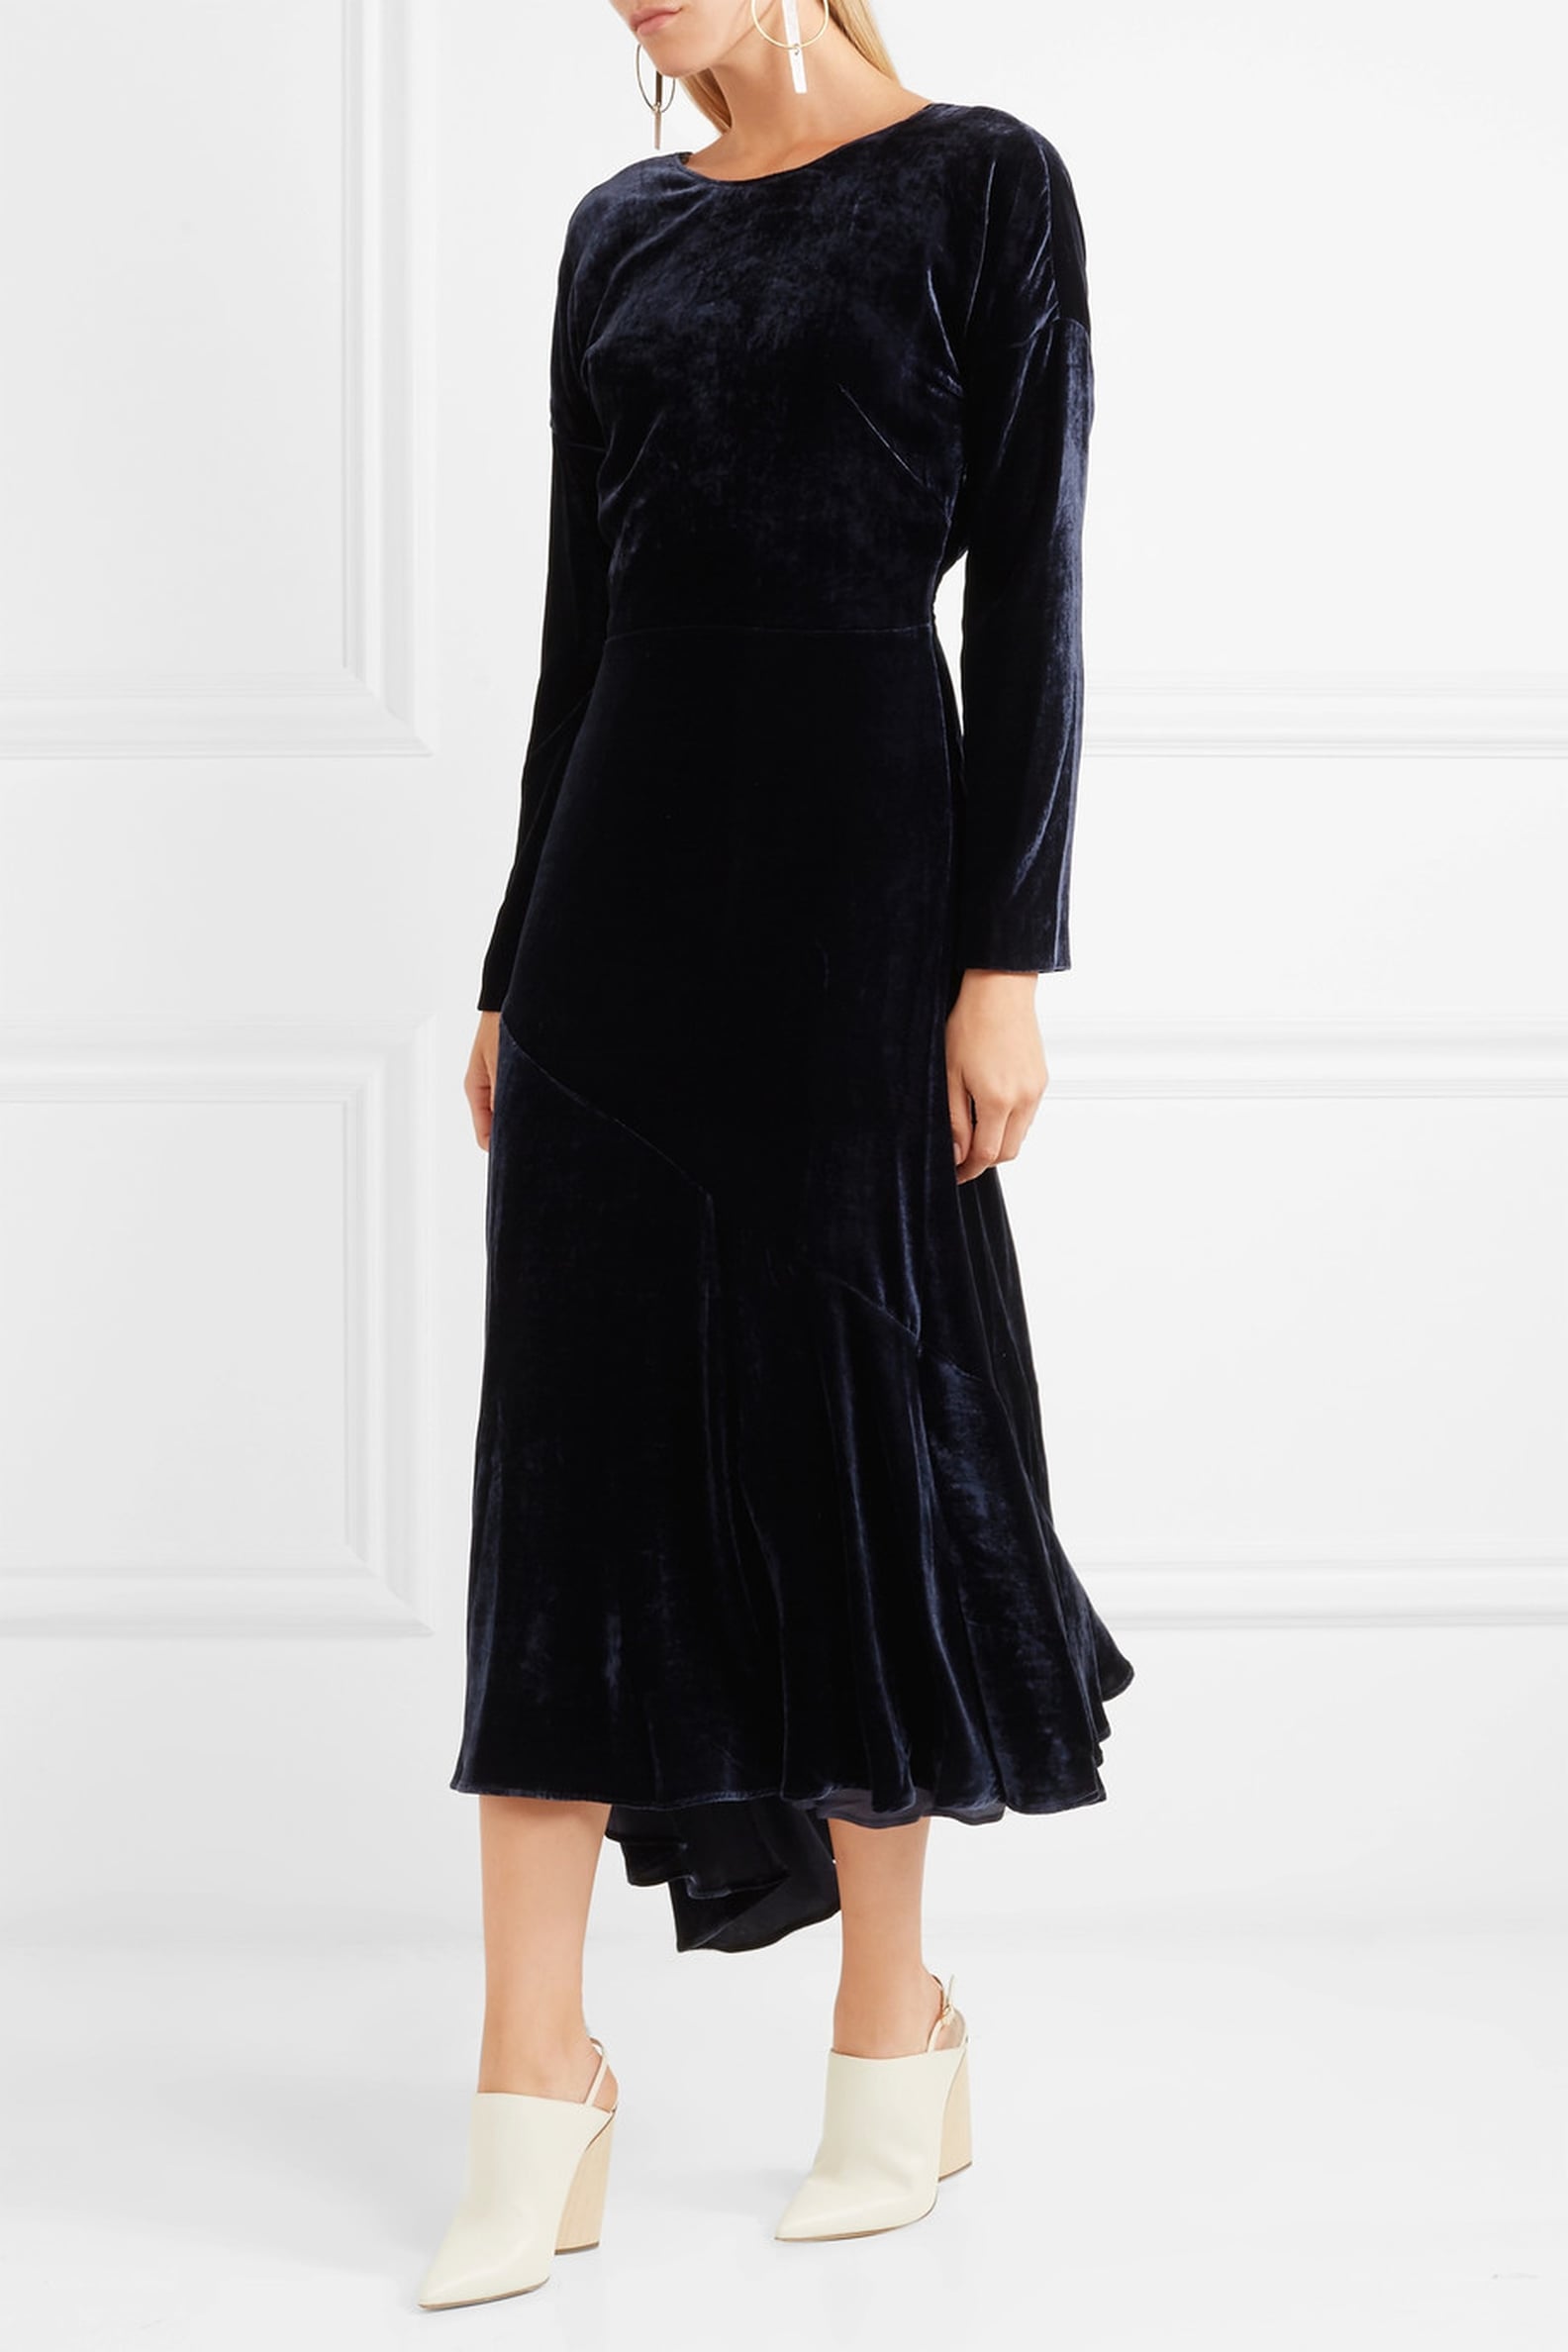 Kate Middleton Velvet Catherine Walker Dress | POPSUGAR Fashion